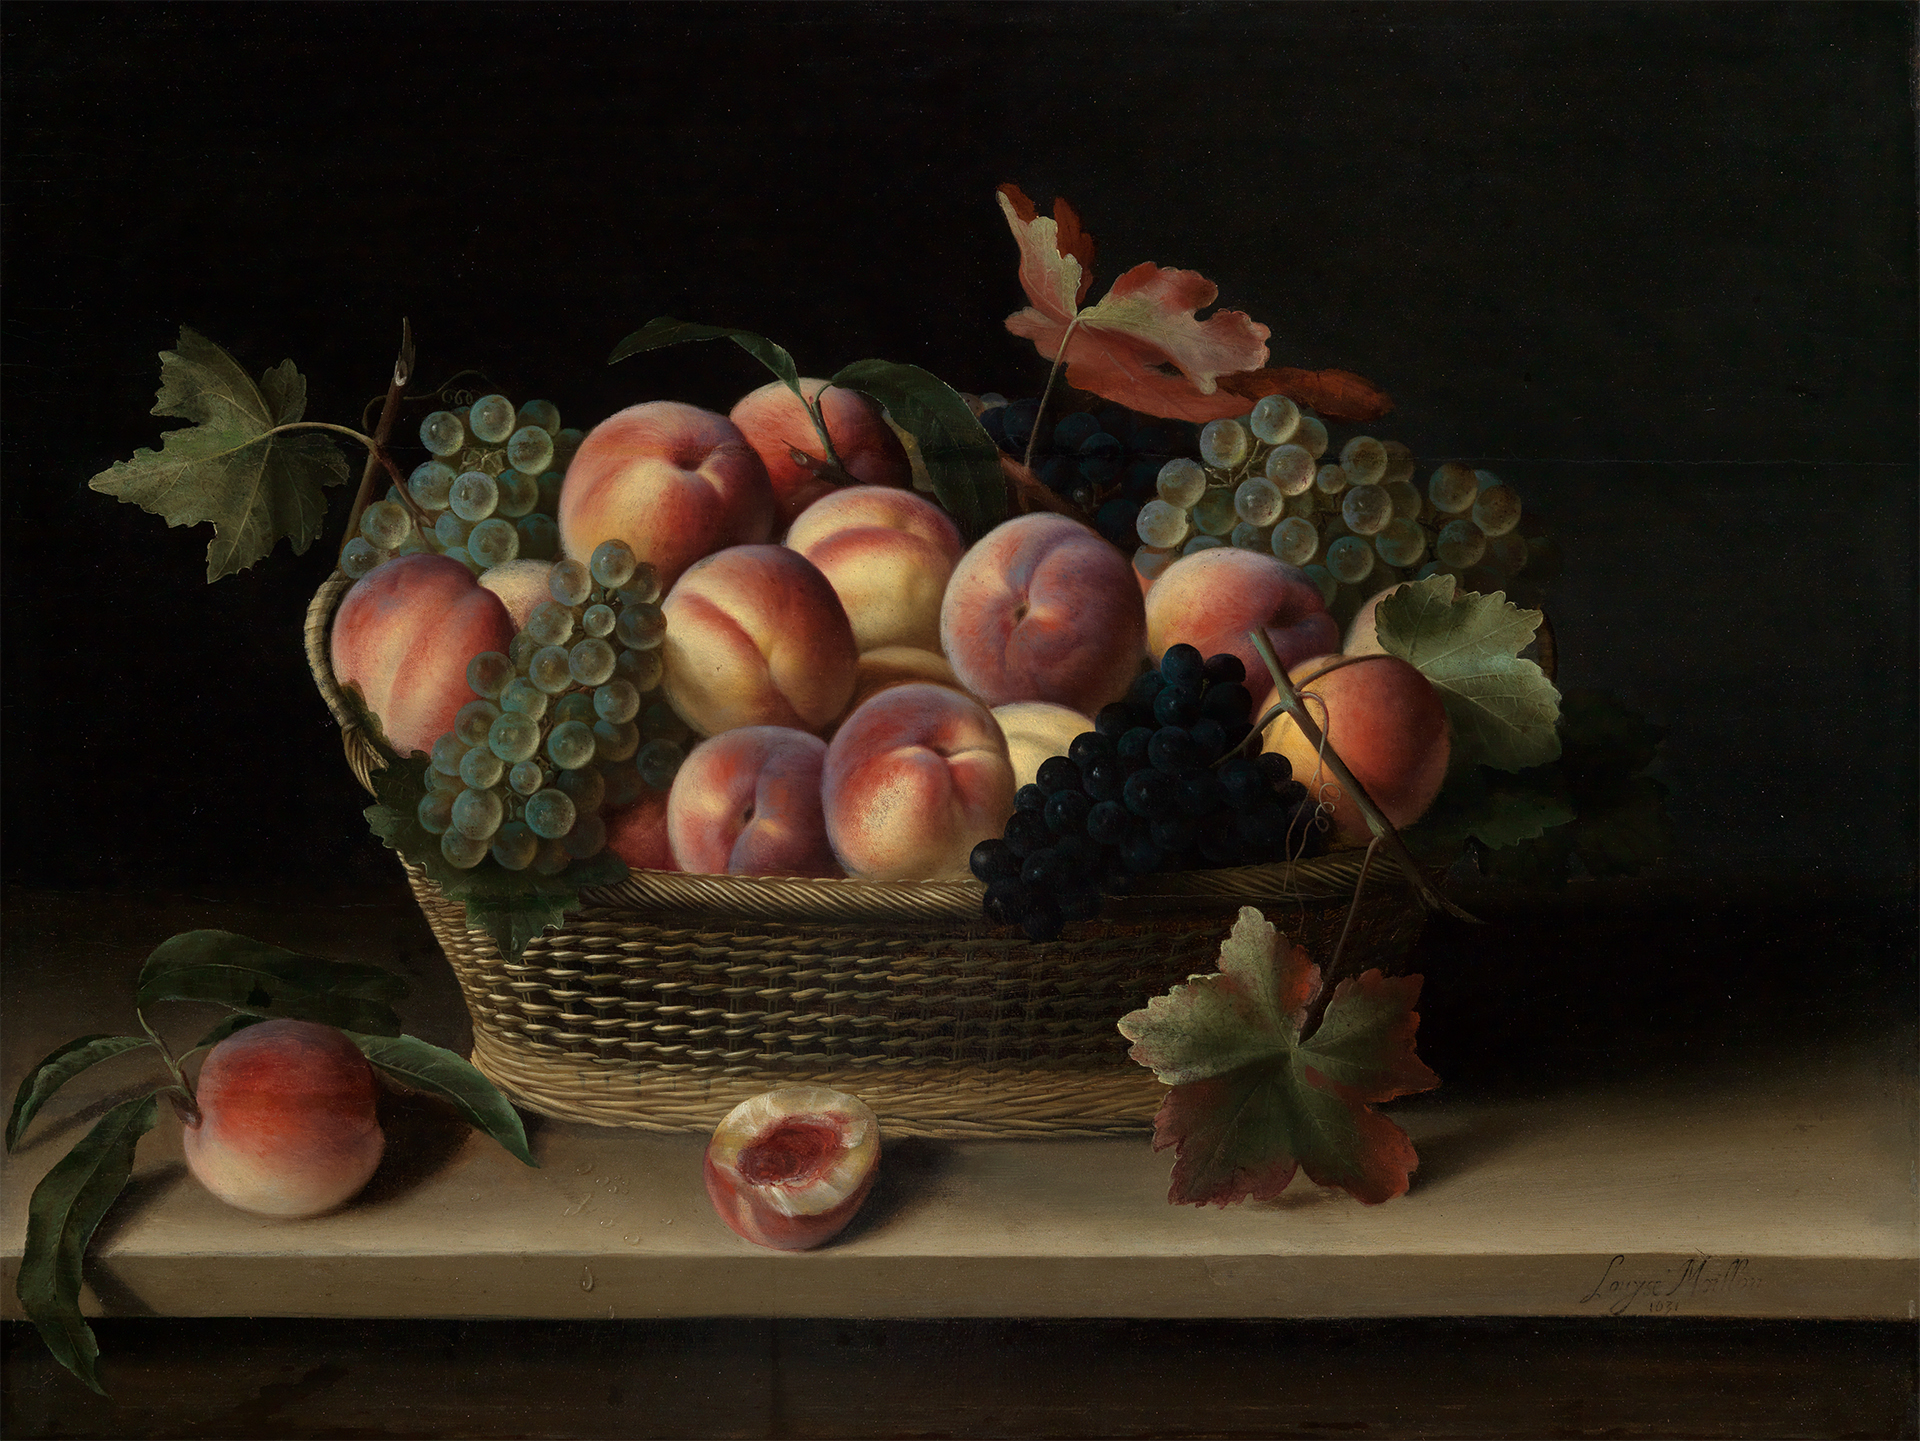 Abbildung eines Gemäldes, das einen Korb vor dunklem Hintergrund zeigt. In dem Korb liegen Trauben und Pfirsiche. Zwei Pfirsiche liegen außerhalb des Korbes.